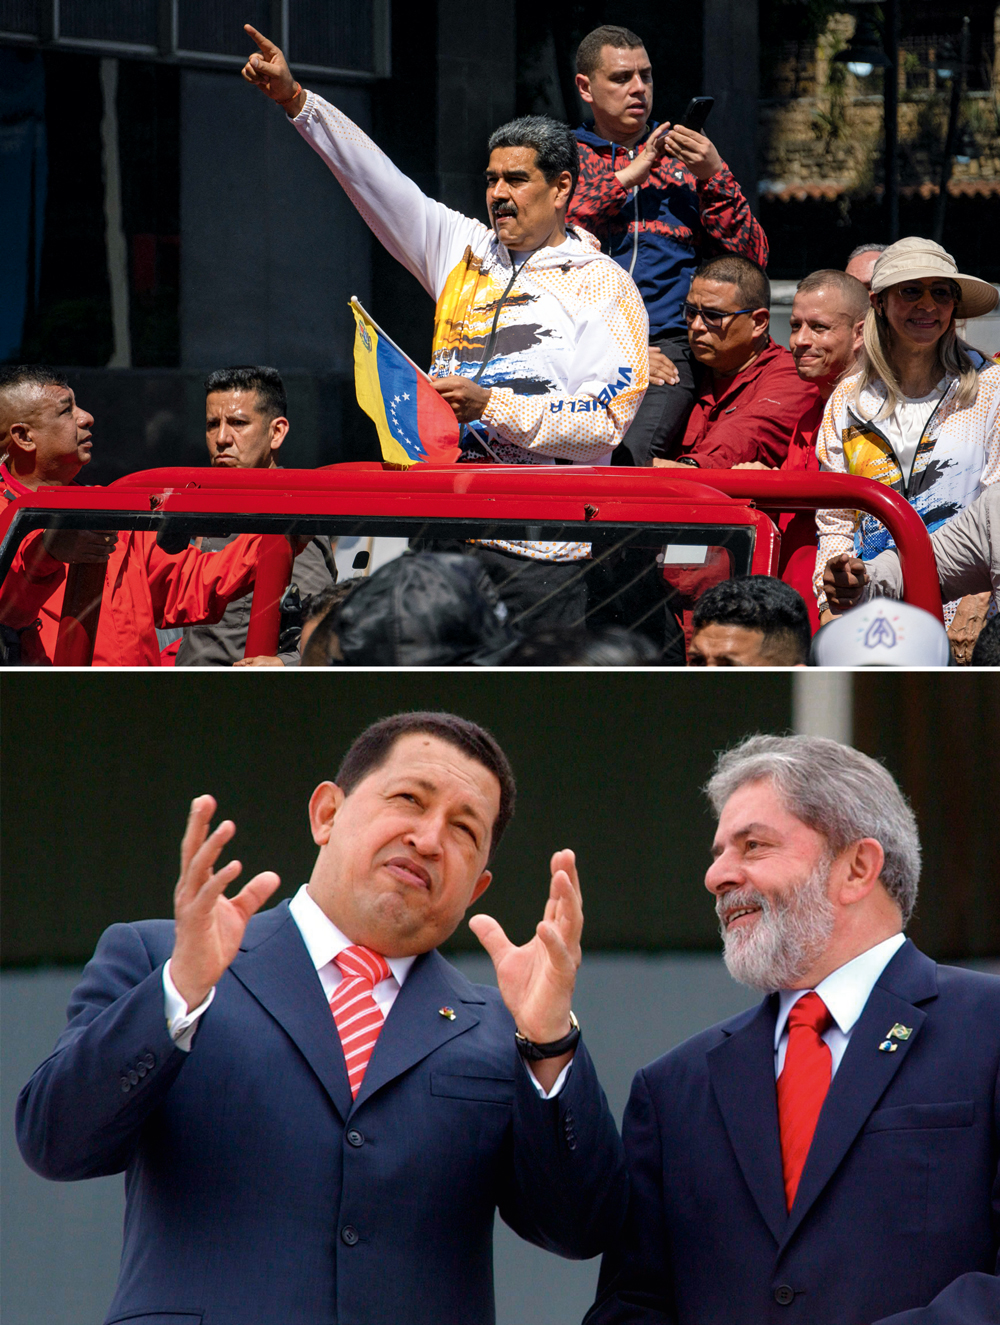 BONS COMPANHEIROS - Lula com Chávez (abaixo) e Maduro: caminhando sobre uma linha delicada, o brasileiro prefere não tecer críticas